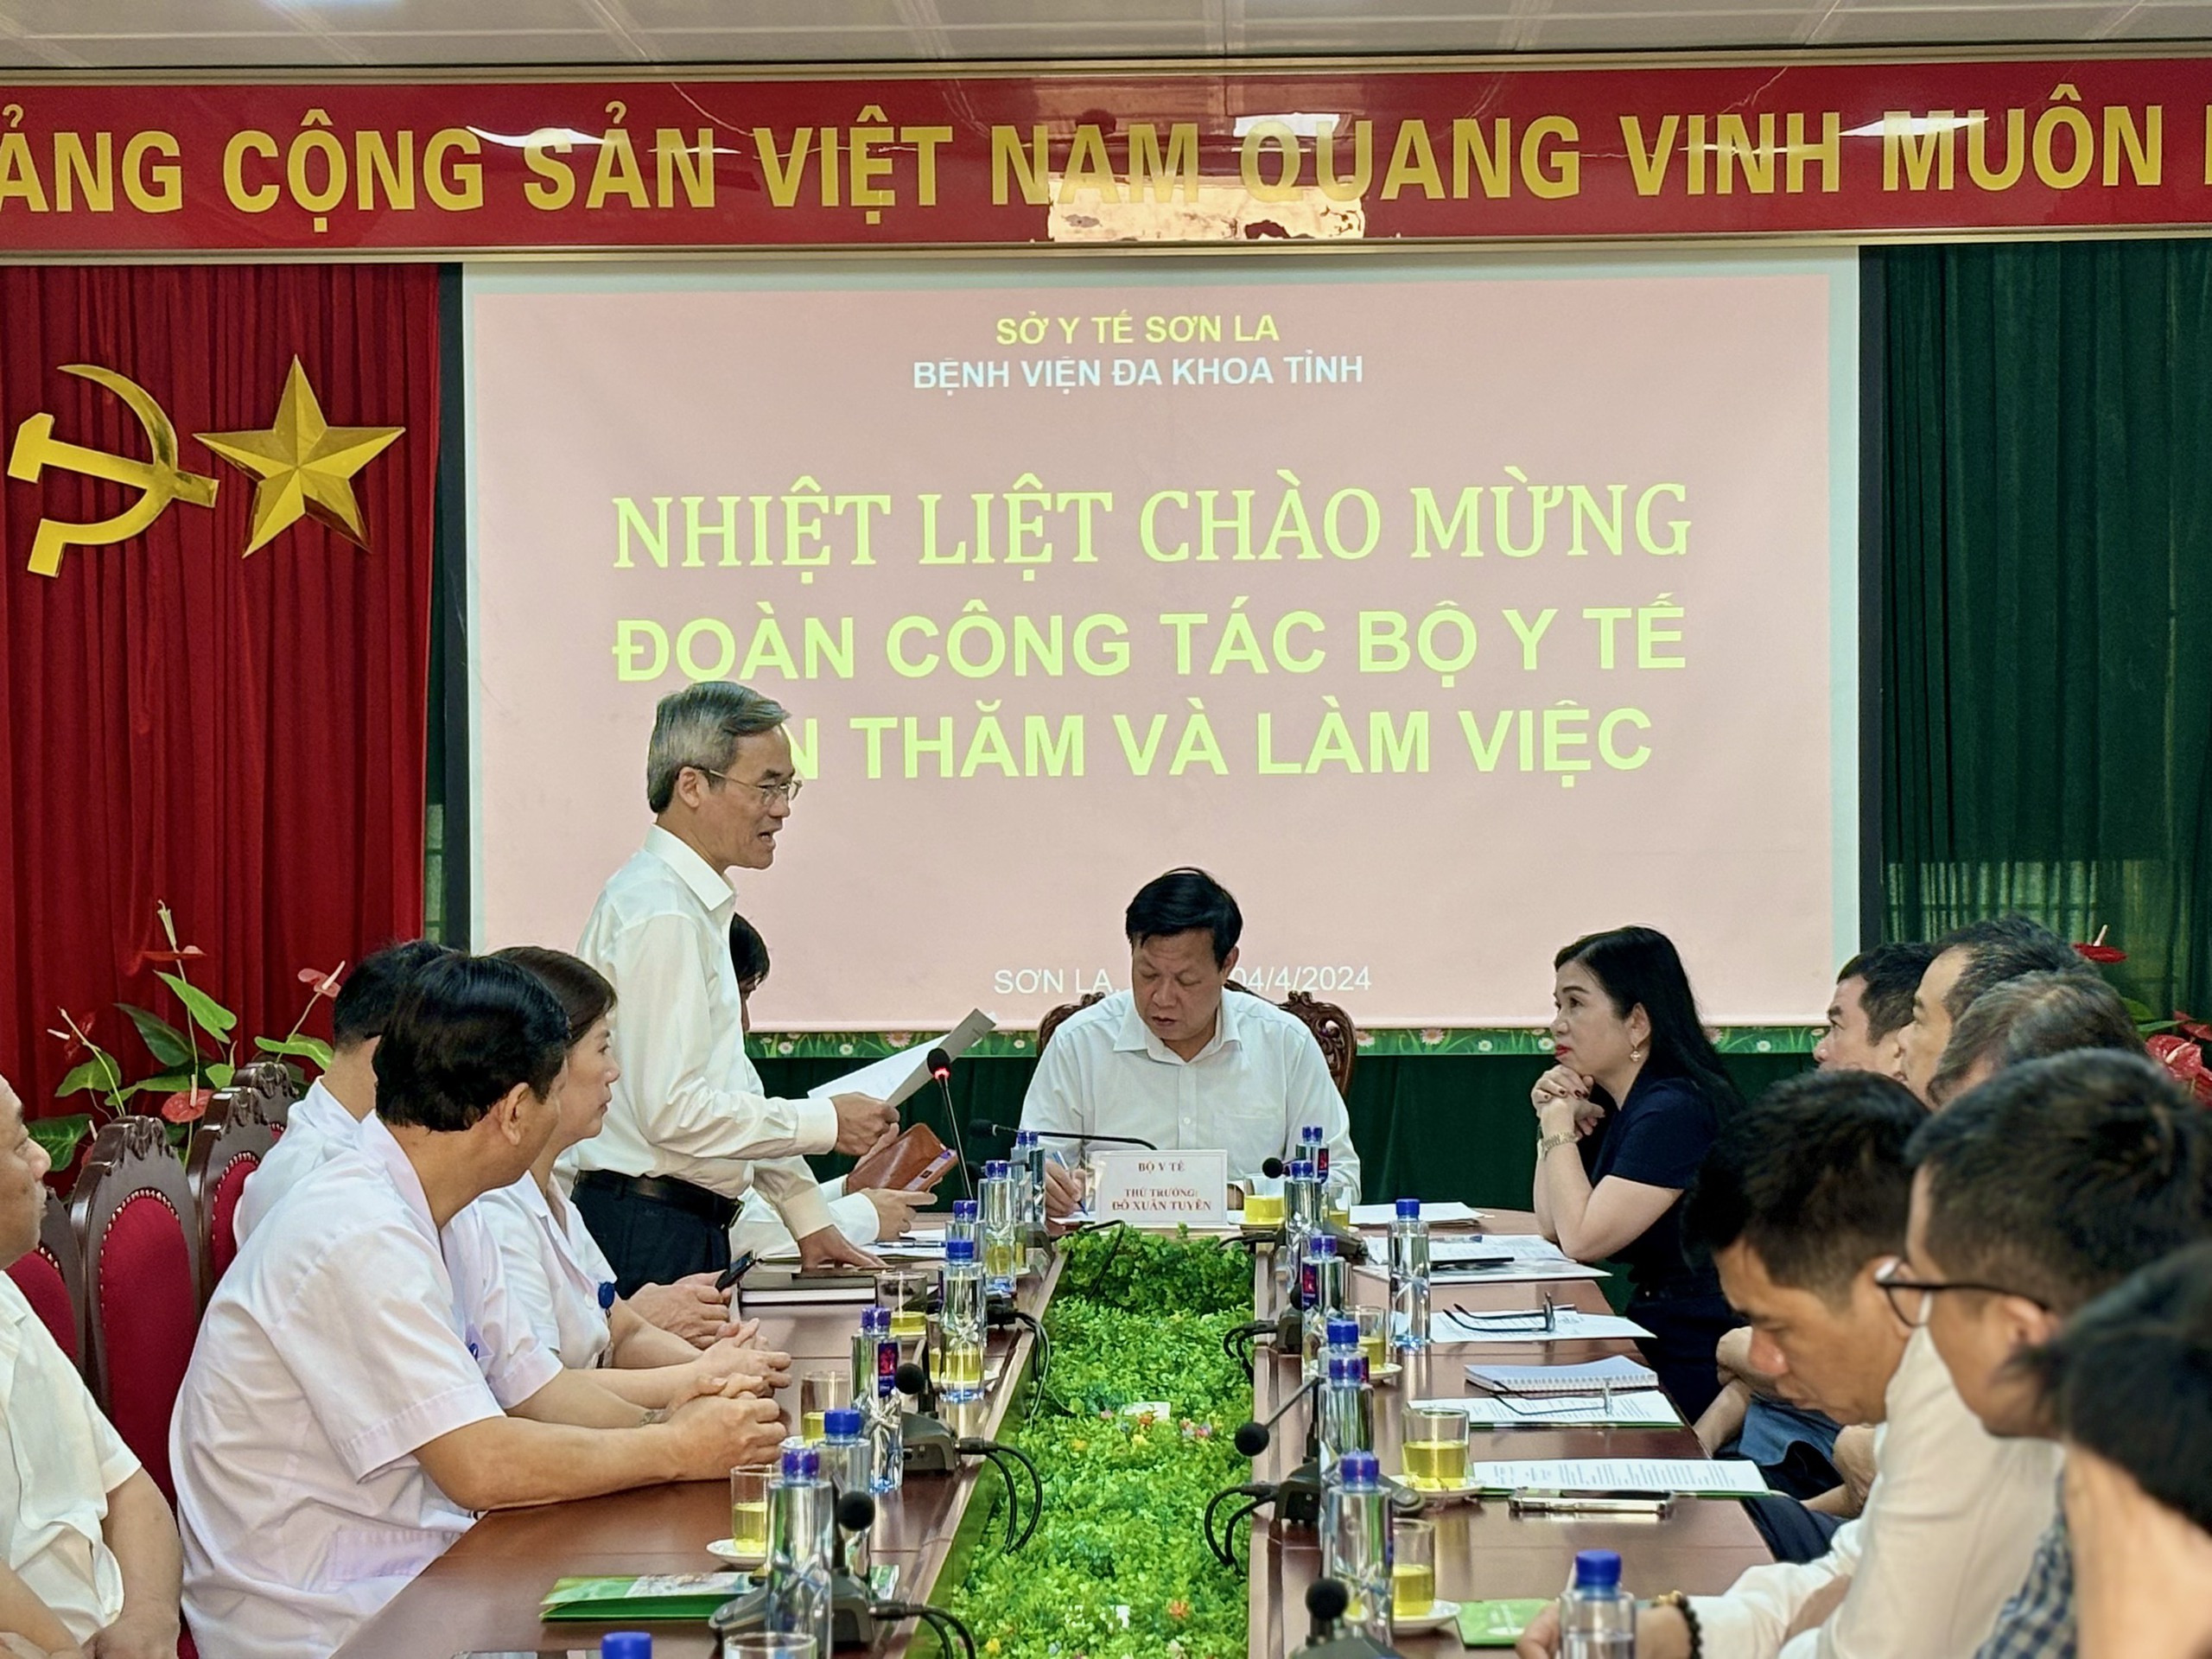 ‘Để đảm nhiệm chức năng vùng, BVĐK tỉnh Sơn La phải nâng chuyên môn, đẩy mạnh phát triển kỹ thuật cao’- Ảnh 3.